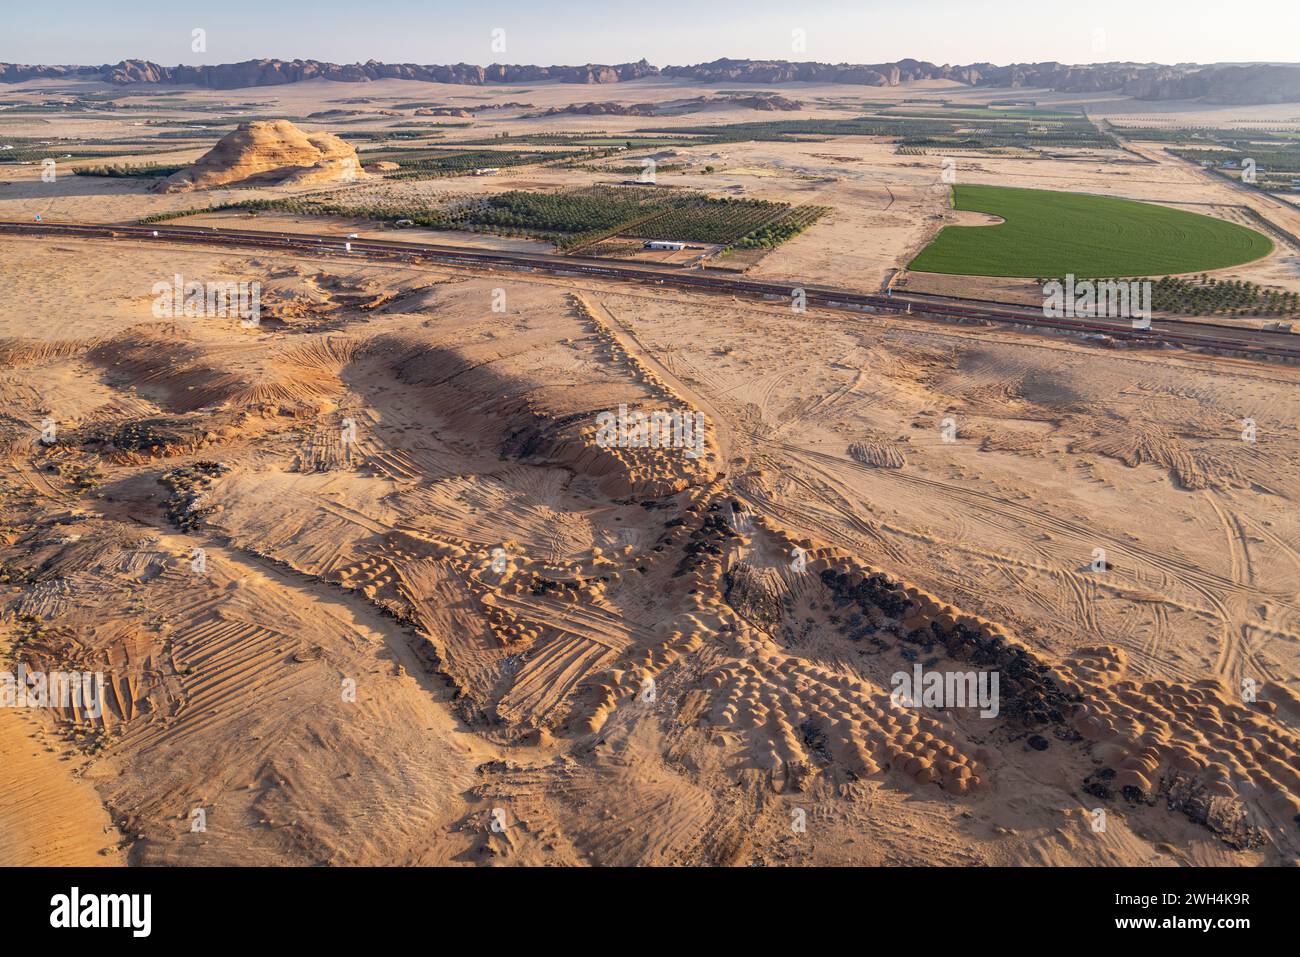 Naher Osten, Saudi-Arabien, Medina, Al-Ula. Trockene Landschaft in der saudiarabischen Wüste, von einem Heißluftballon aus gesehen. Stockfoto